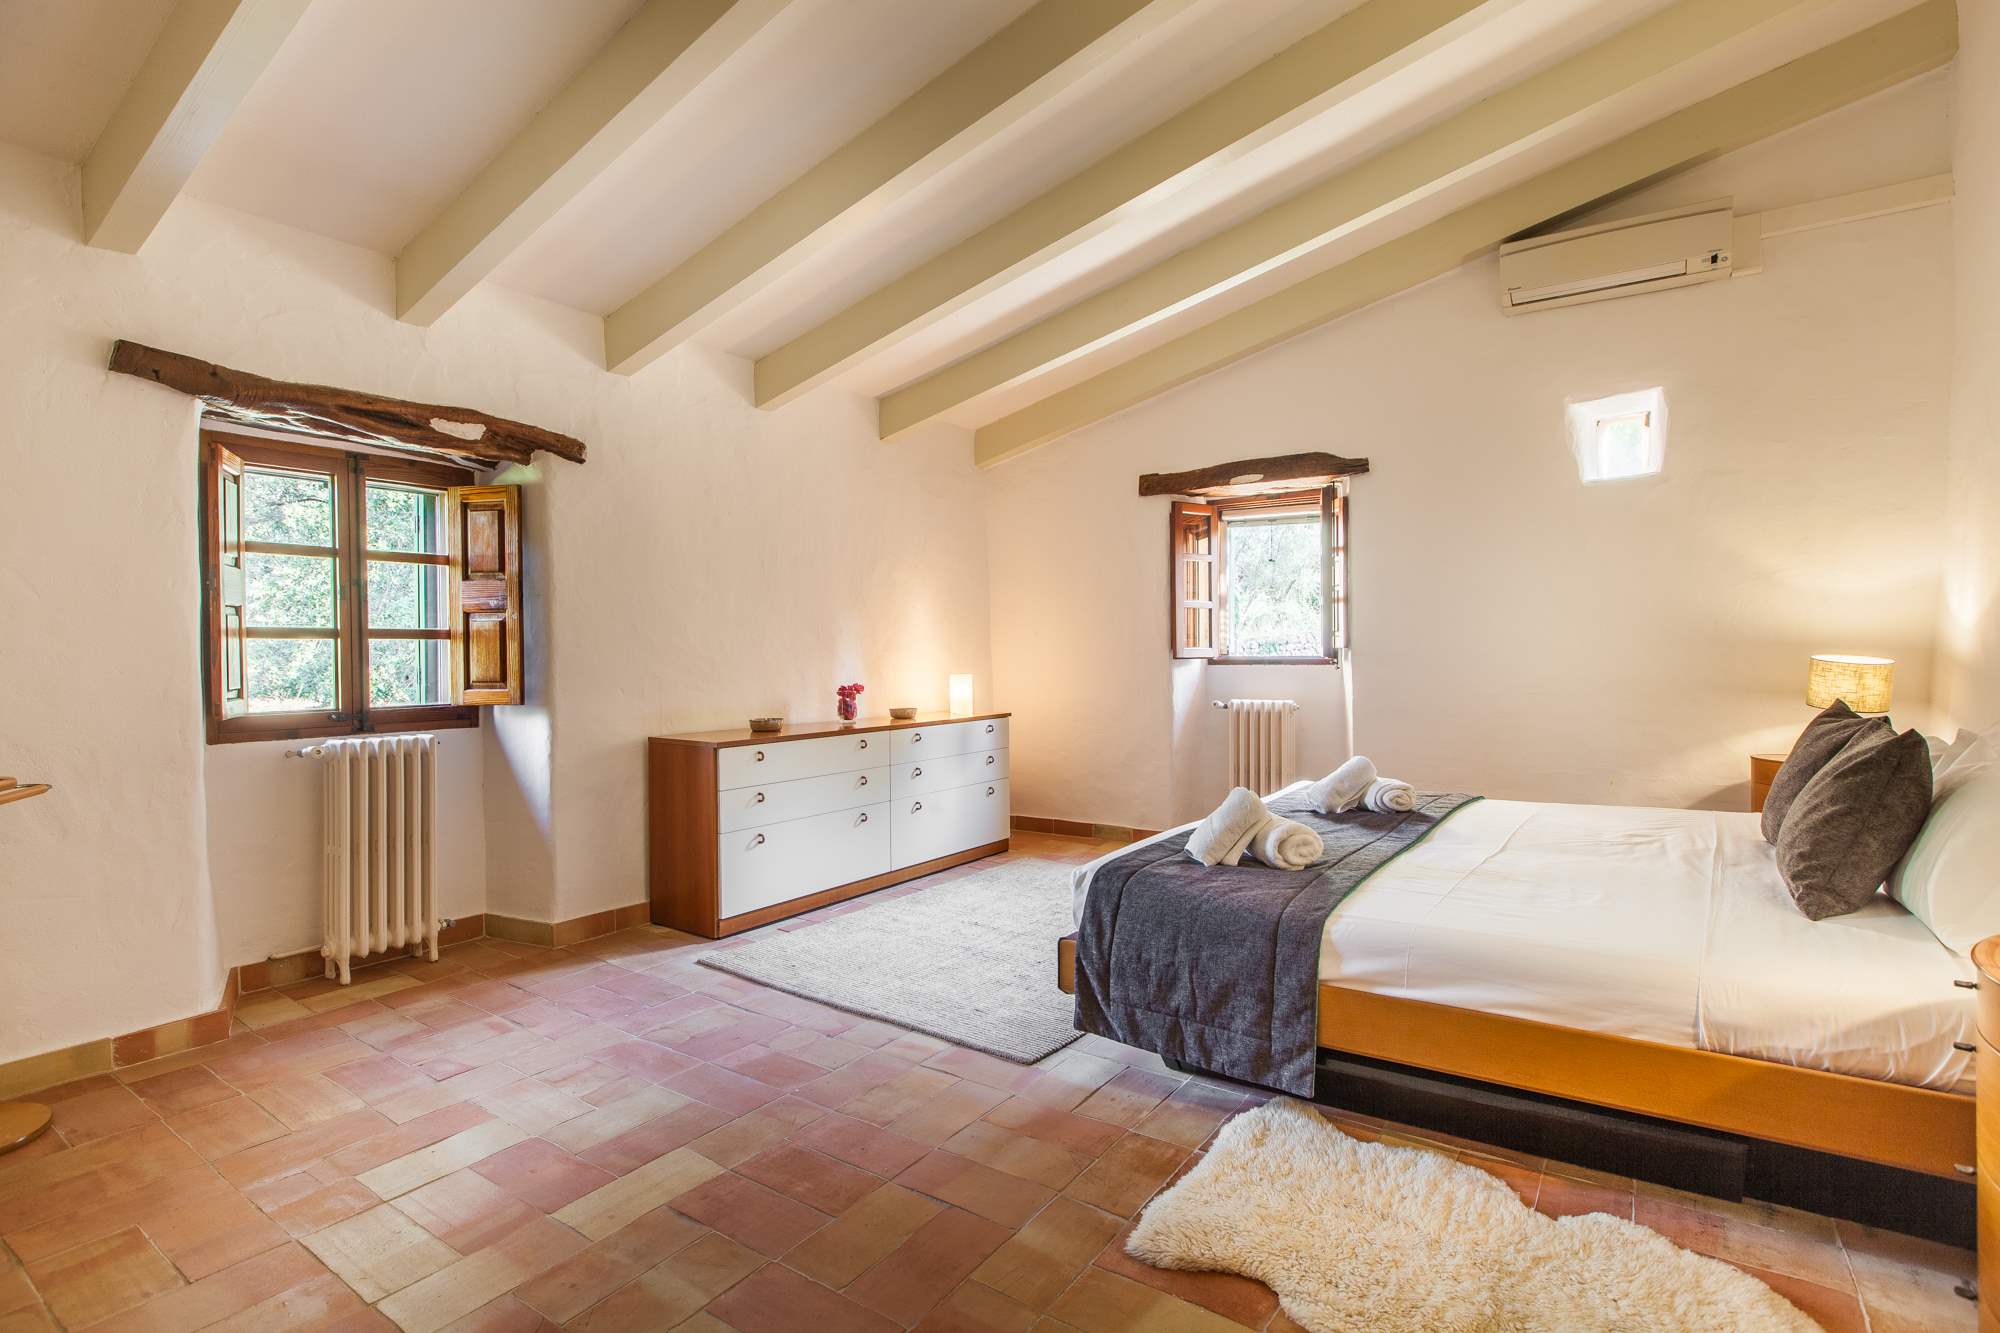 Es Clotal, 2 bedroom, 2 bedroom villa in Pollensa & Puerto Pollensa, Majorca Photo #17